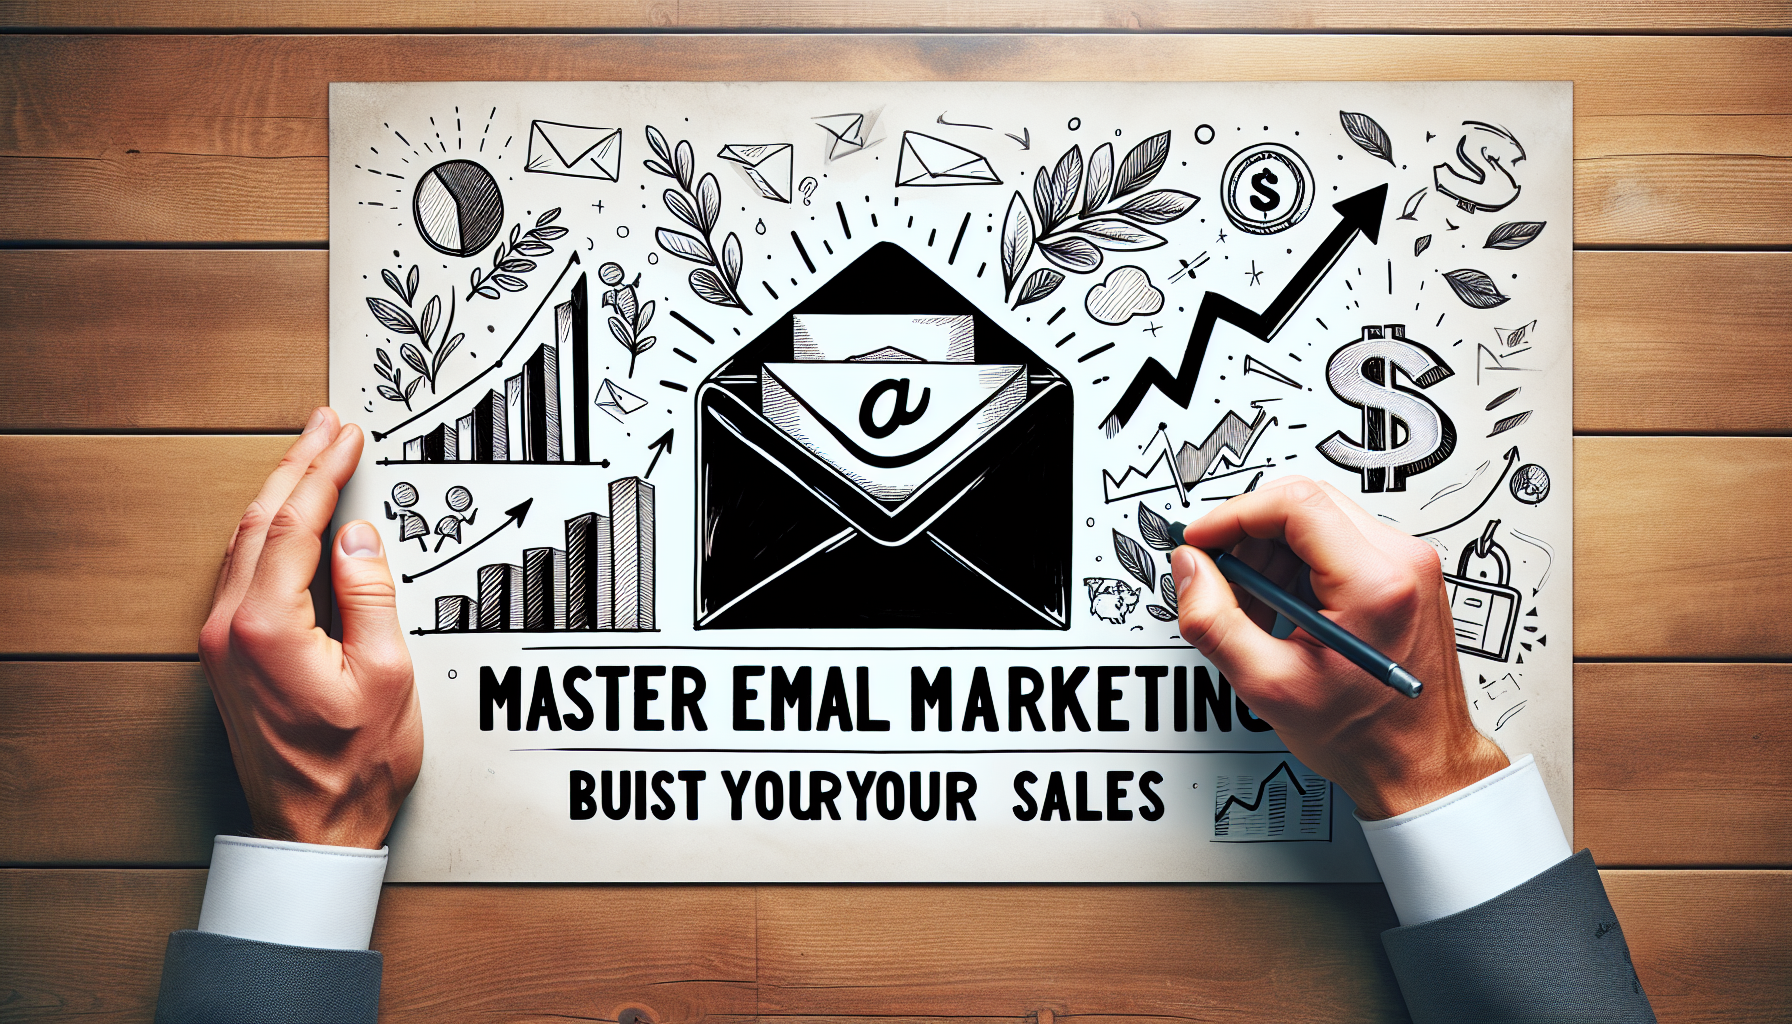 découvrez les meilleures pratiques en email marketing dans notre formation de marketing digital. apprenez à optimiser vos campagnes et à améliorer votre stratégie d'email marketing.